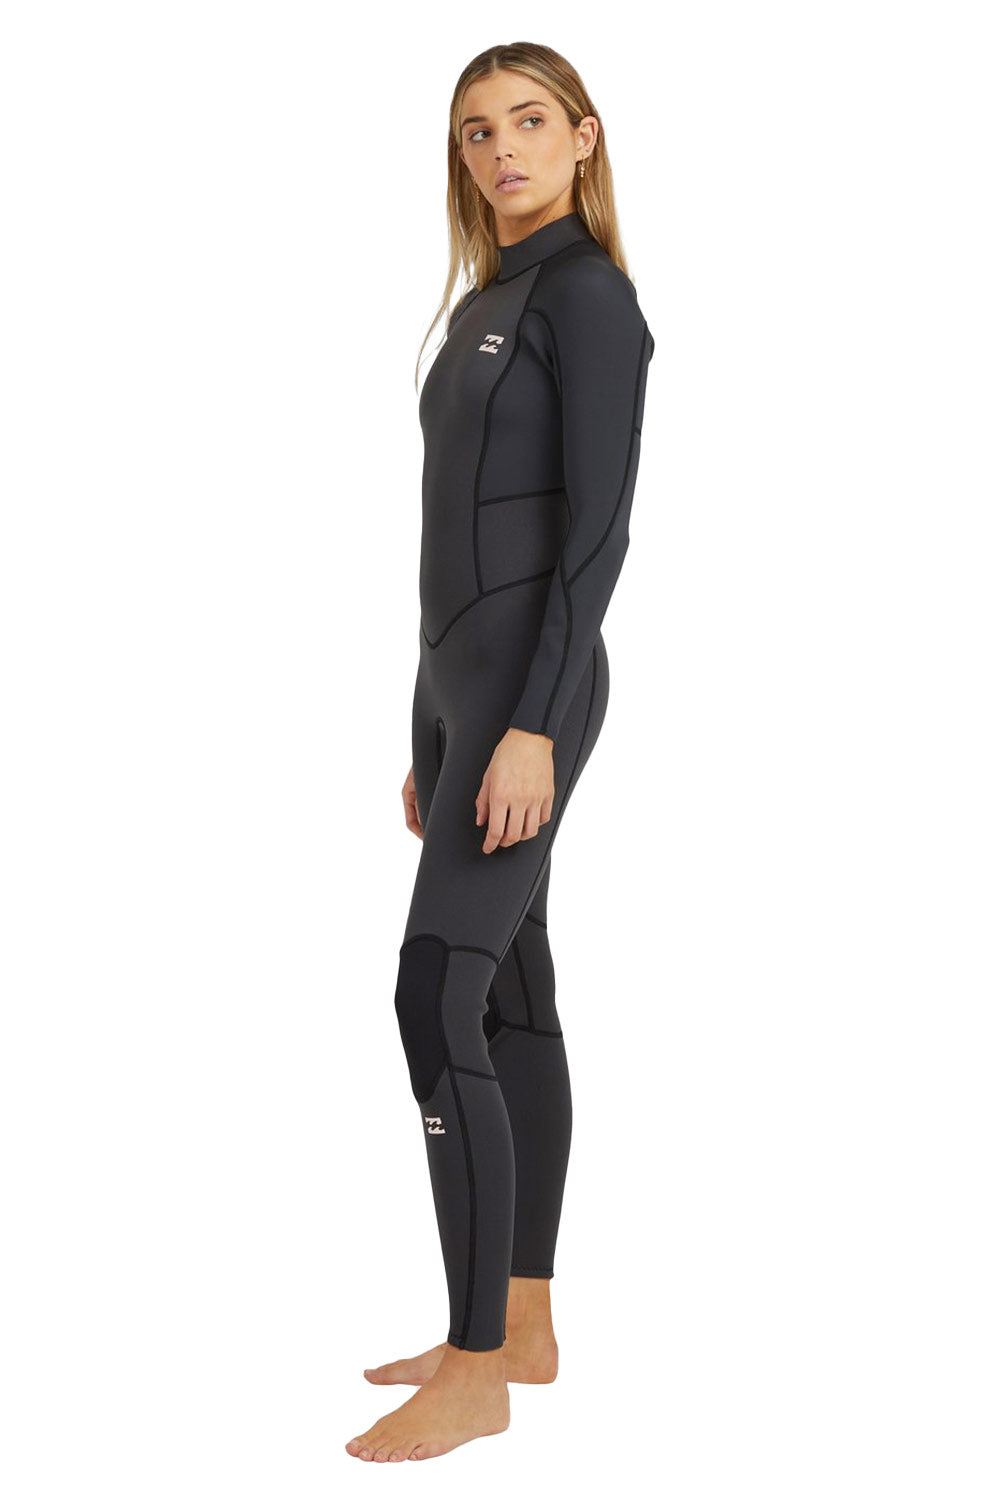 Billabong Wetsuits | Women's 3/2mm Launch Back Zip Steamer Wetsuit